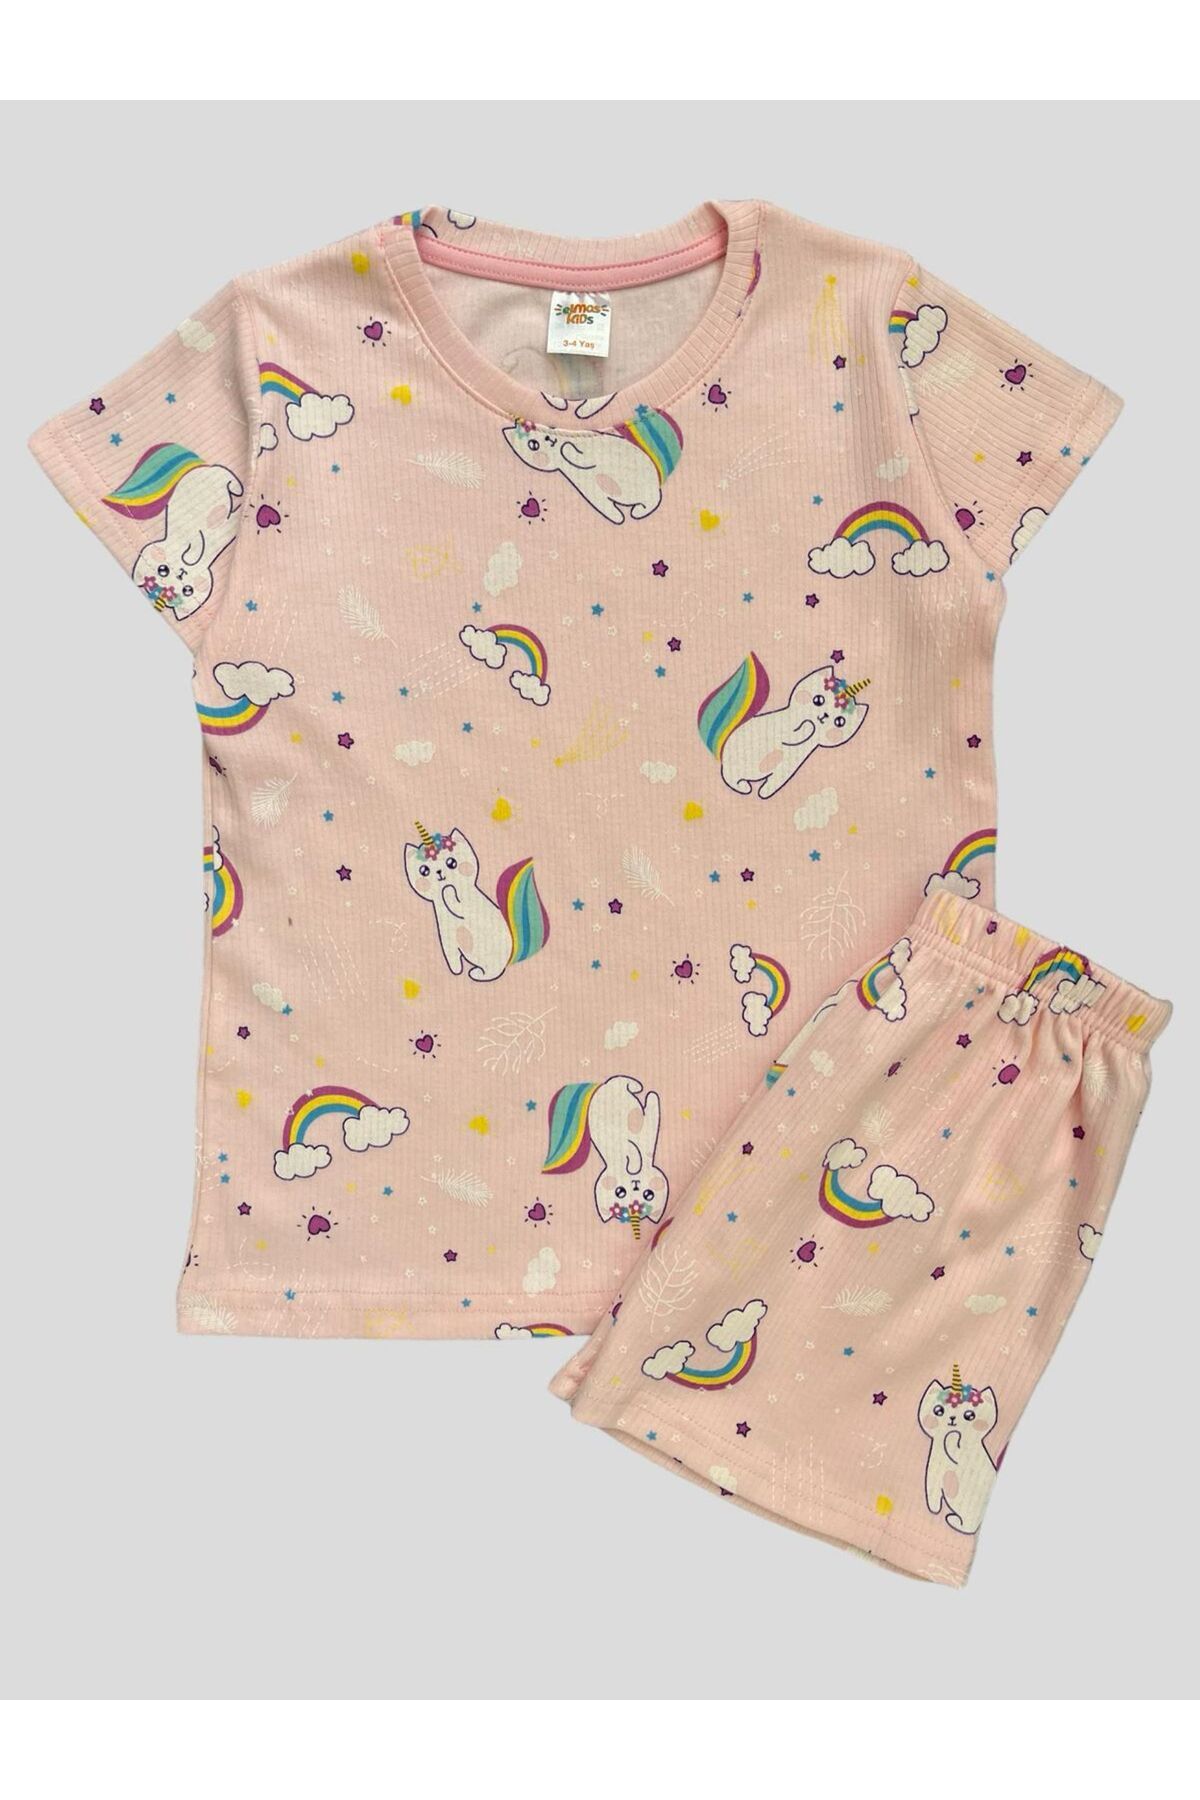 elmas kids Kız Çocuk Pamuklu Pembe Gökkuşağı Kedi Desenli Fitilli Kısa Kollu Şortlu Yazlık Pijama Takımı